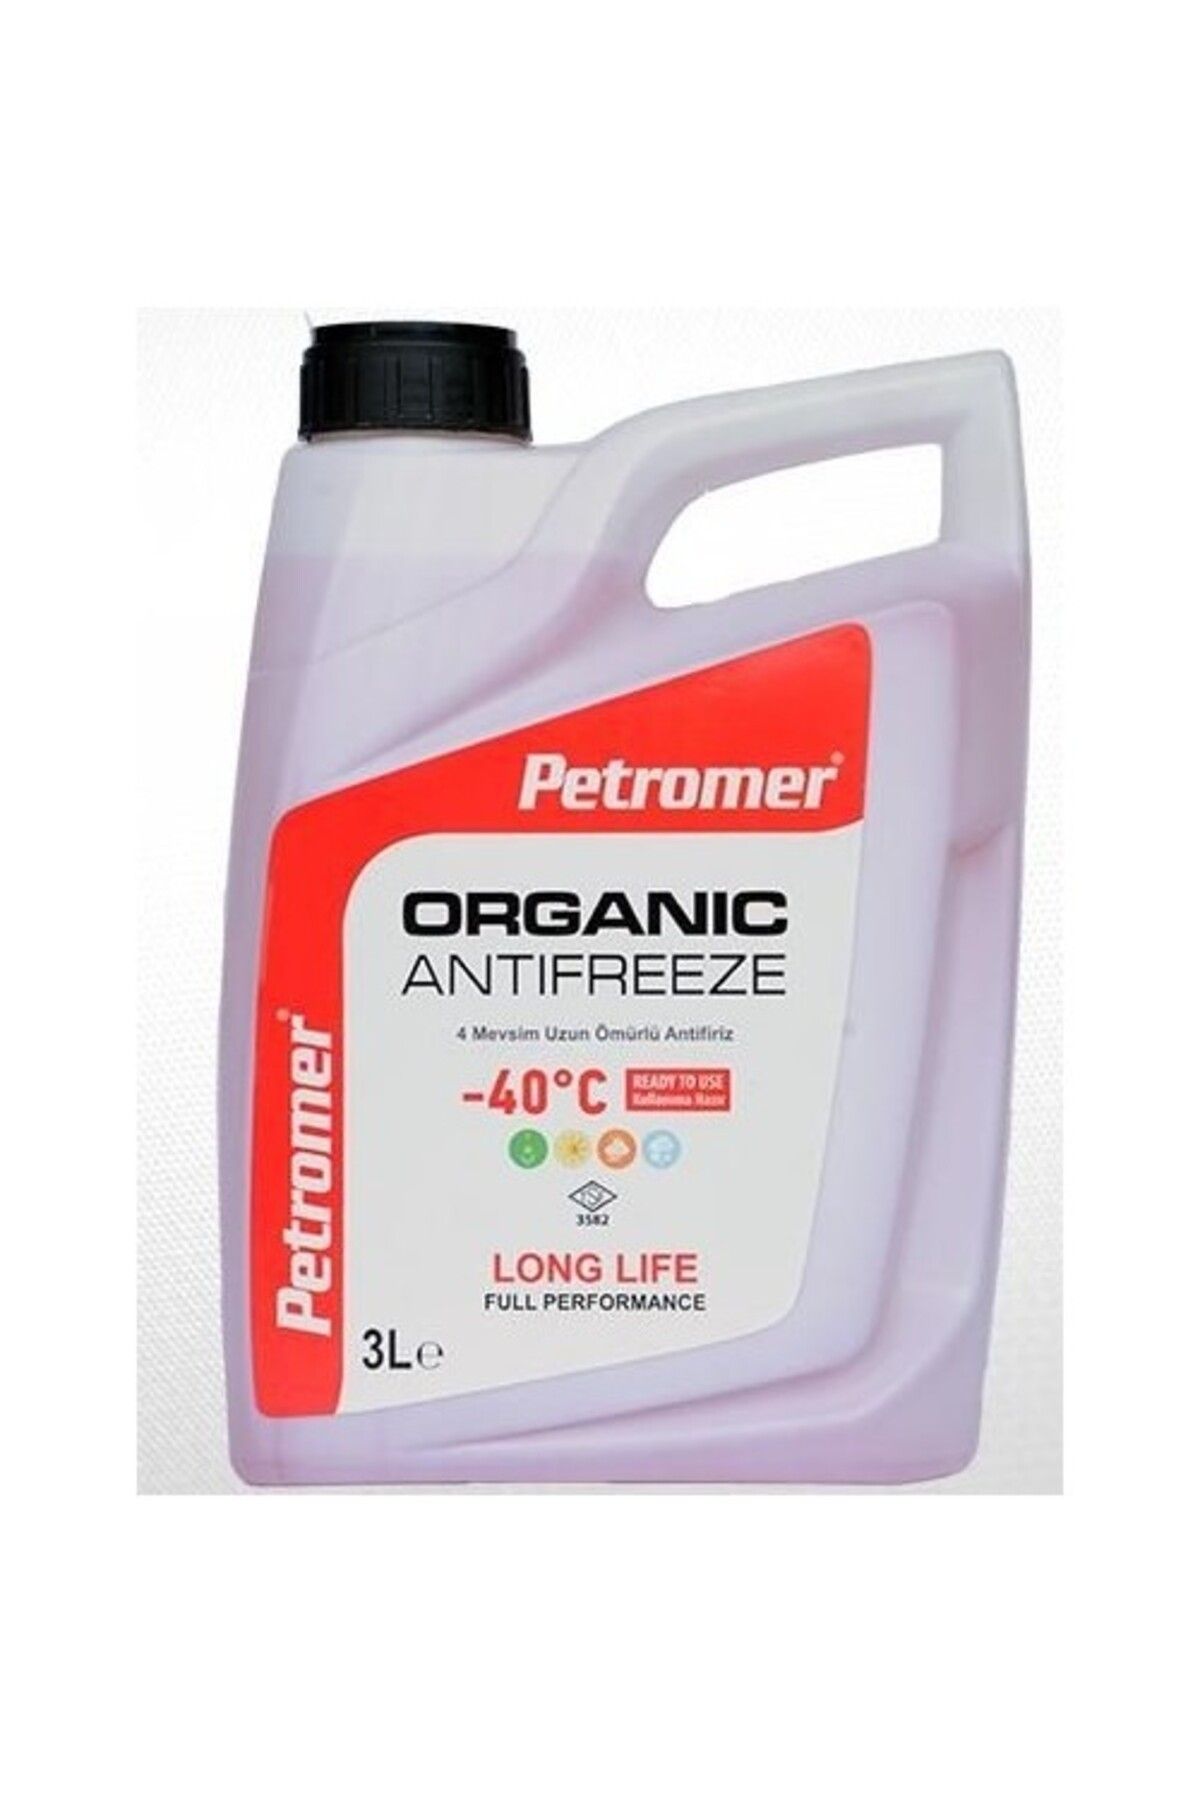 PETROMER Organic Antifiriz -40 Kırmızı 3 Litre (KULLANIMA HAZIR) 4 Mevsim